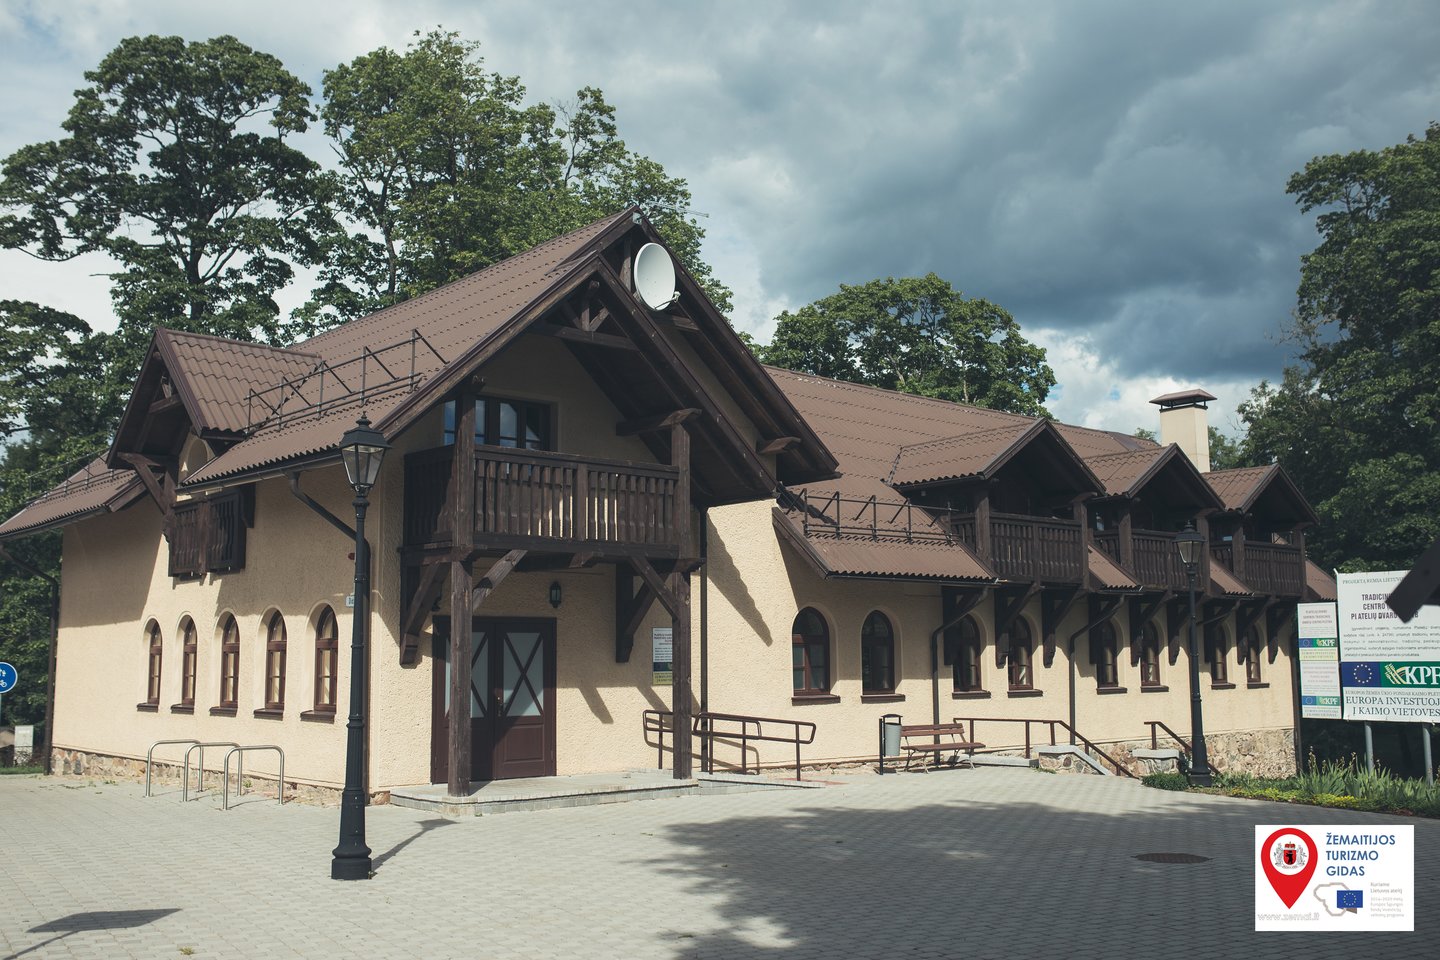  Platelių dvaro sodyboje – pažintis su Sofija Tyzenhauzaite ir pamirštu lietuvišku žaidimu.<br> Žemaitijos turizmo centro nuotr.